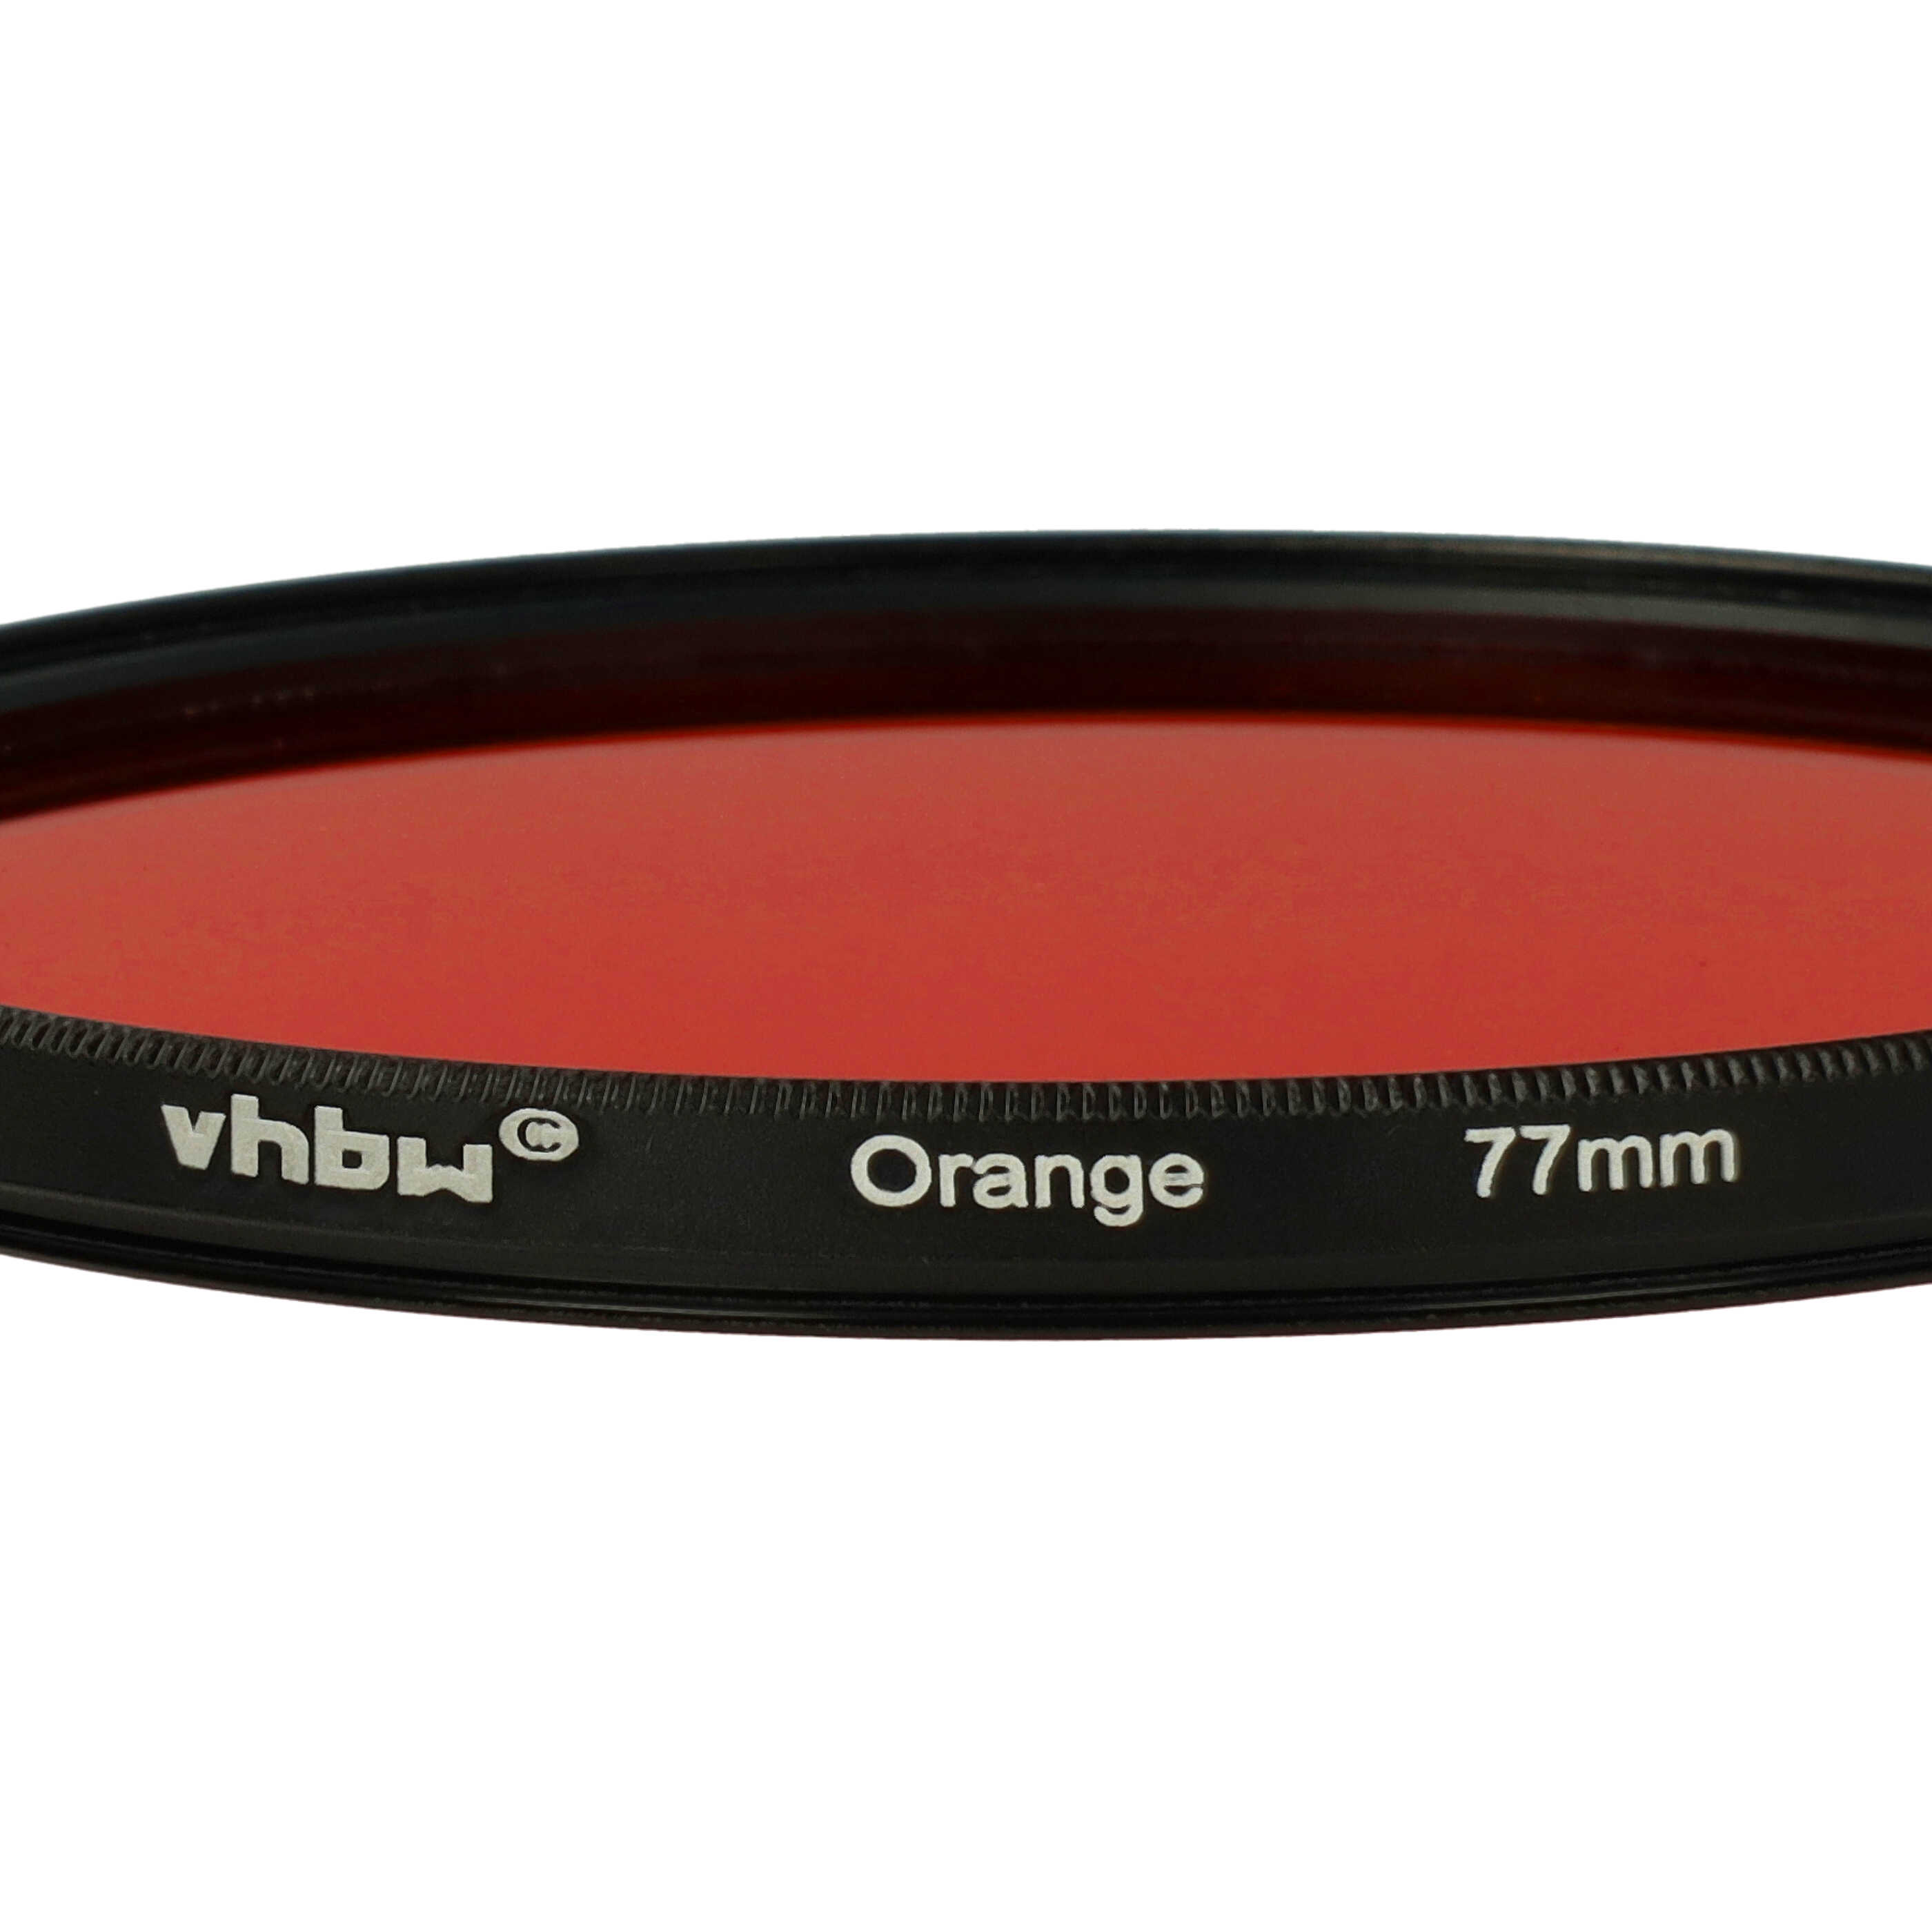 Farbfilter orange passend für Kamera Objektive mit 77 mm Filtergewinde - Orangefilter